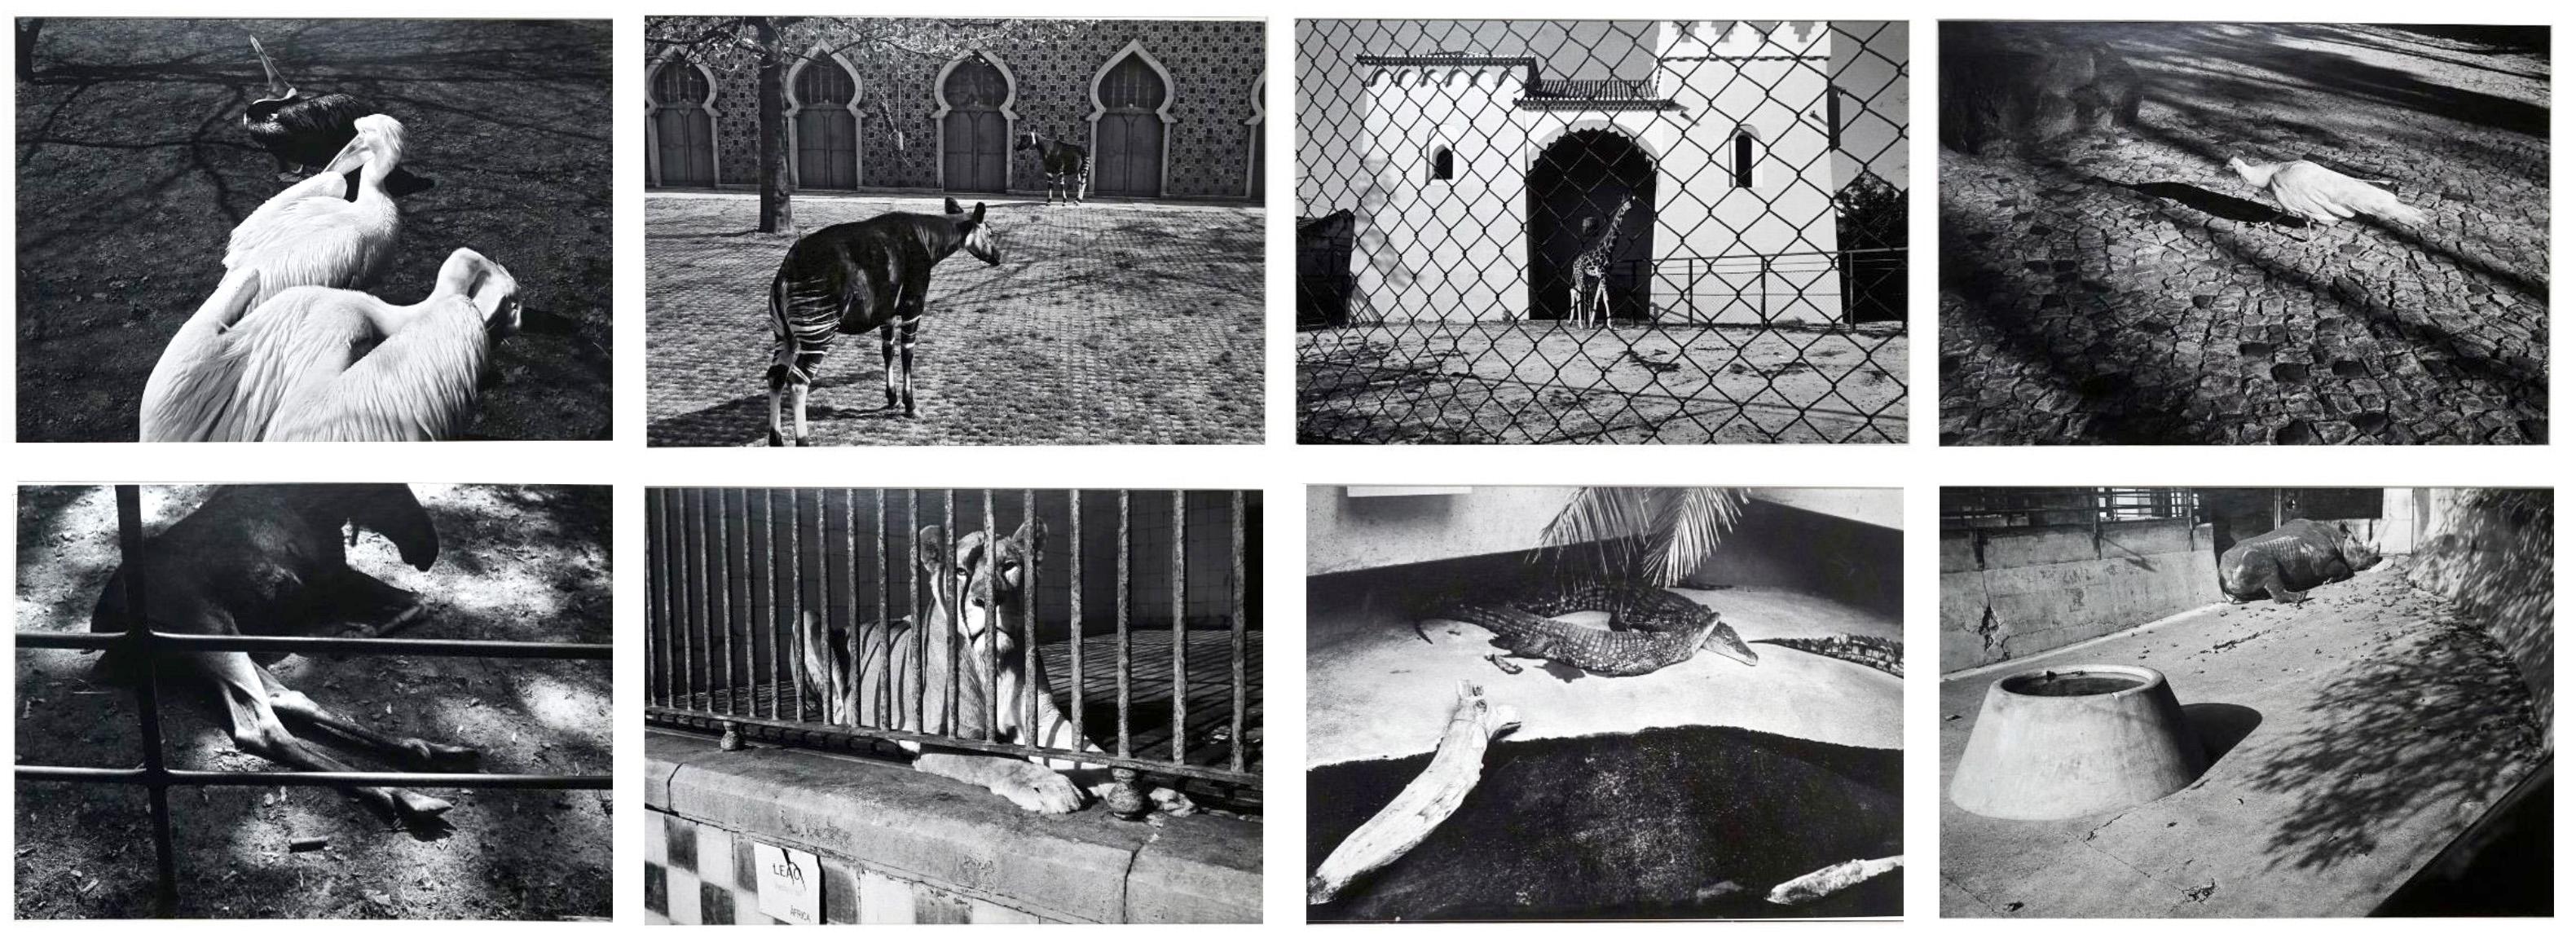 Jörg Krichbaum Abstract Photograph - Parc Zoologique - Coffret Prestige # 3 - 1980, Minimalist Black and White Photog